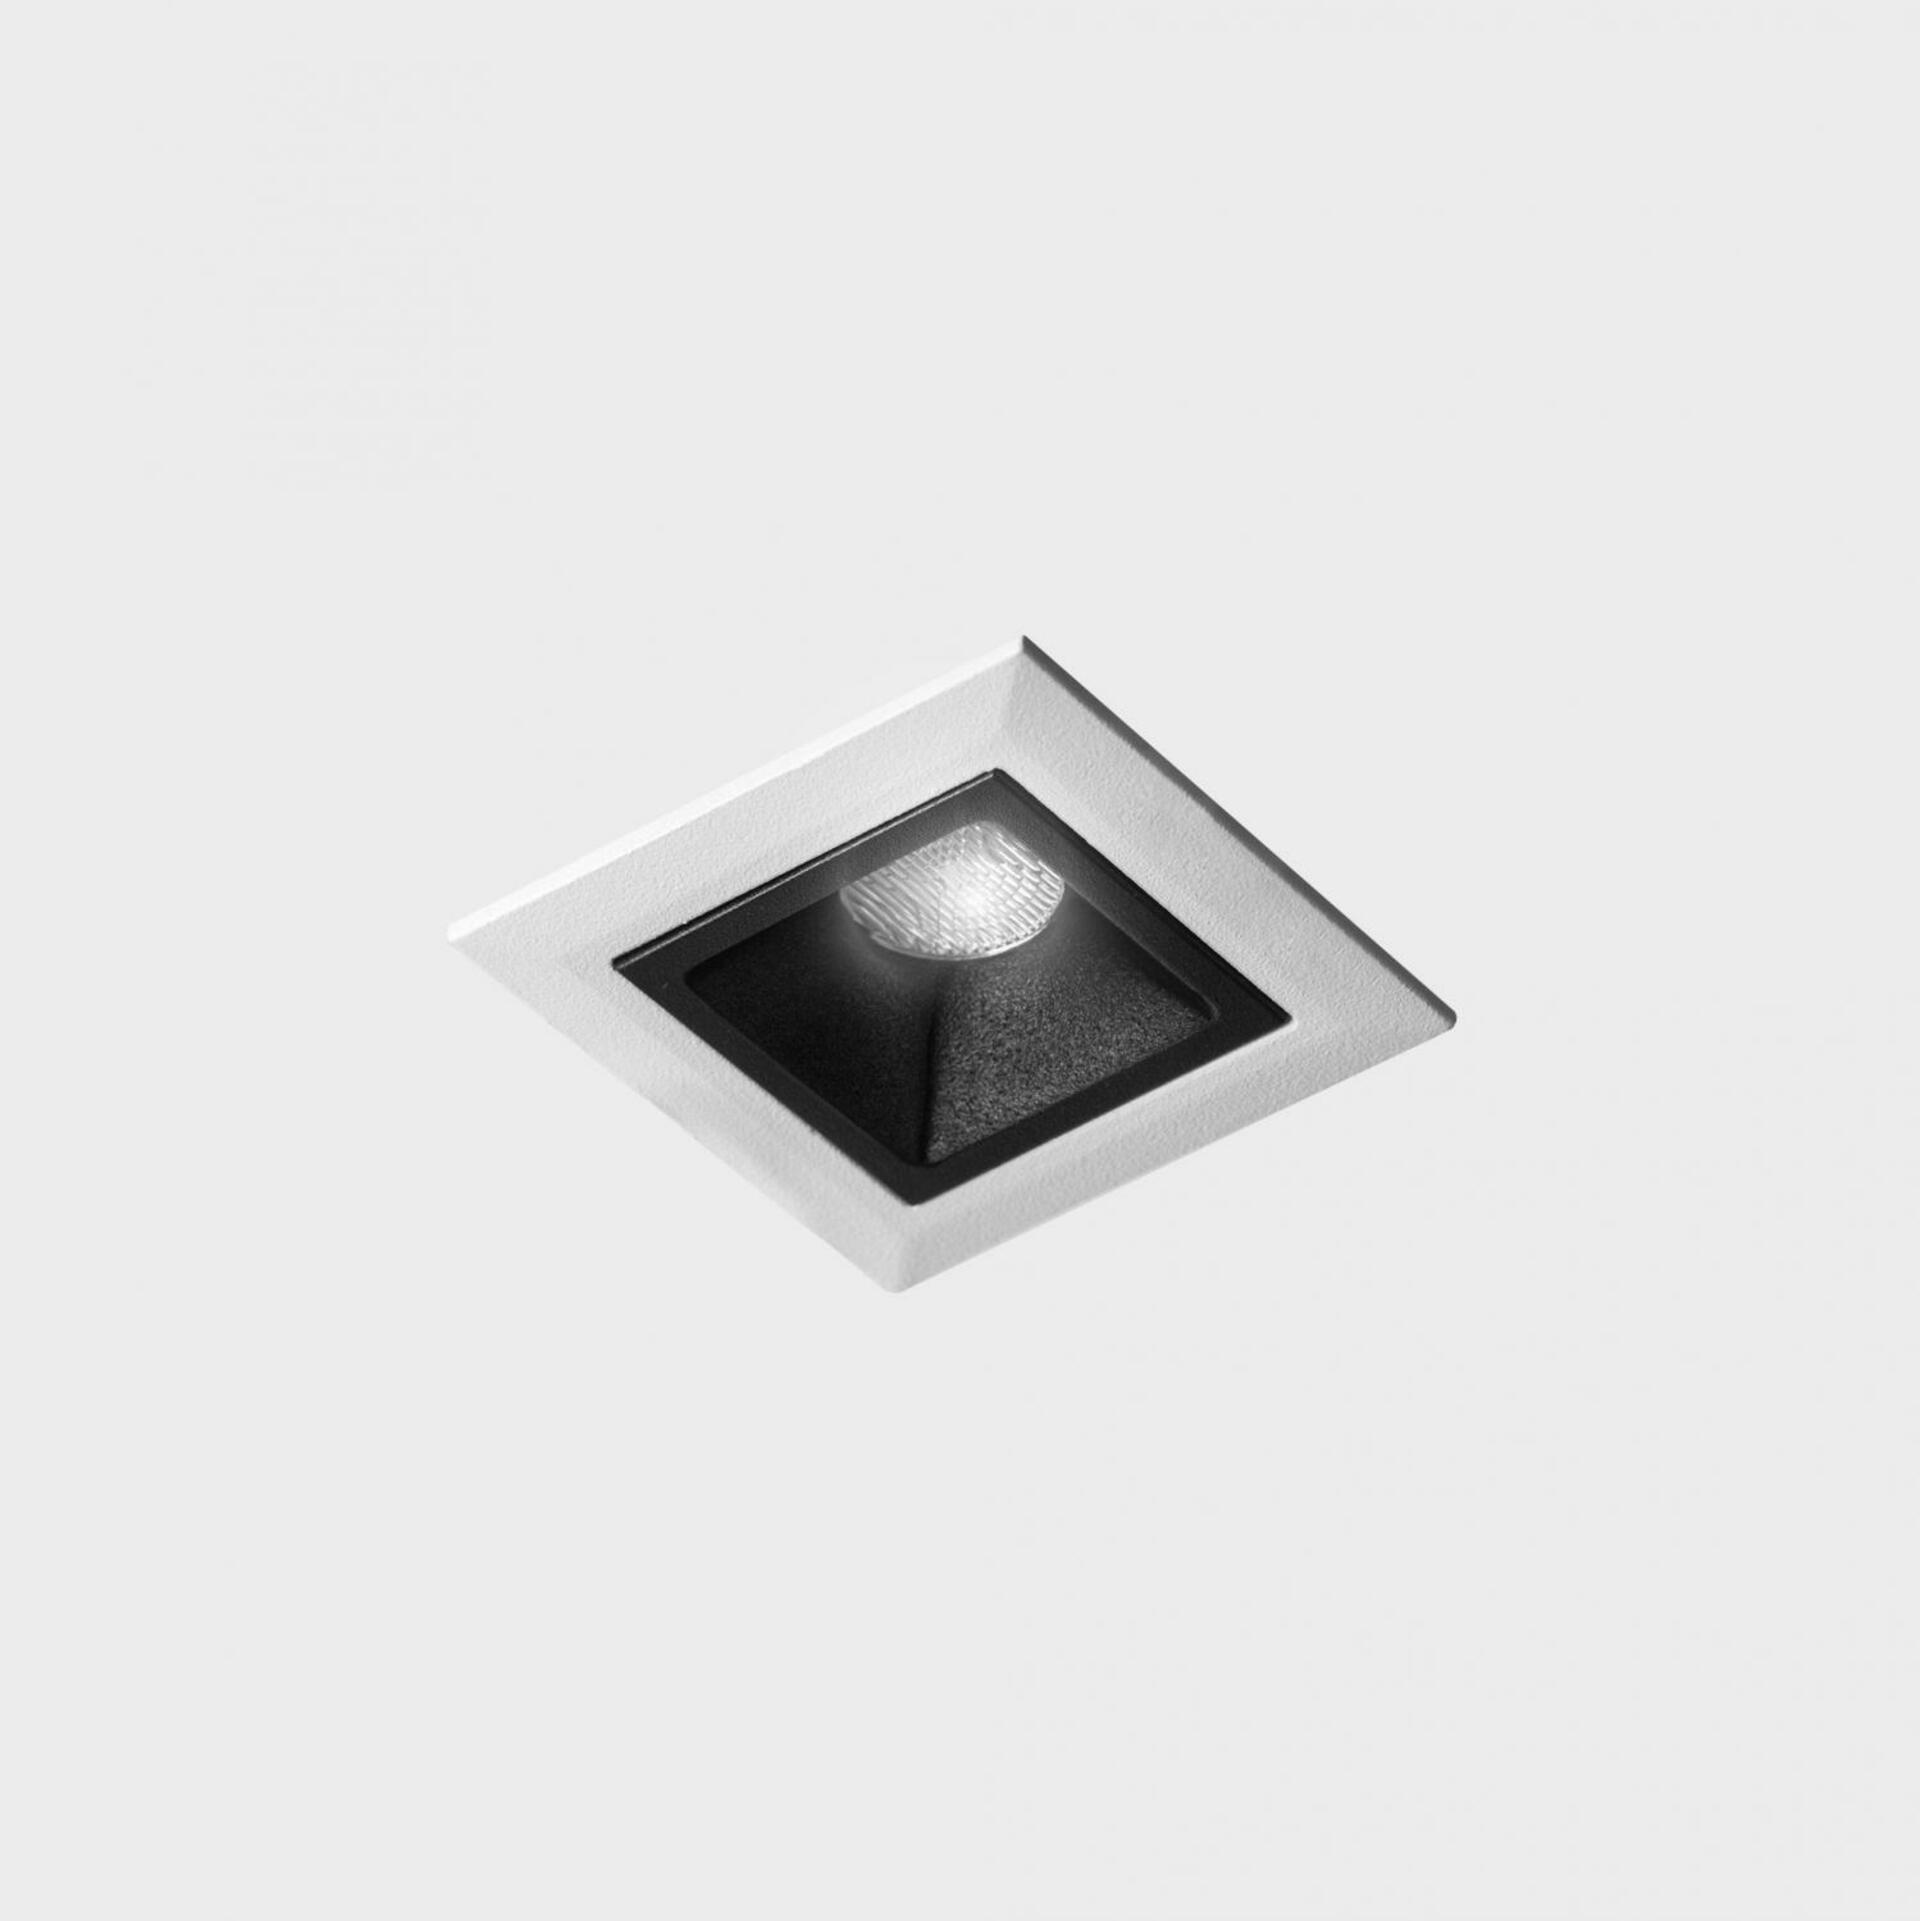 KOHL LIGHTING KOHL-Lighting NSES zapuštěné svítidlo s rámečkem 45x45 mm bílá-černá 2 W CRI 90 4000K DALI